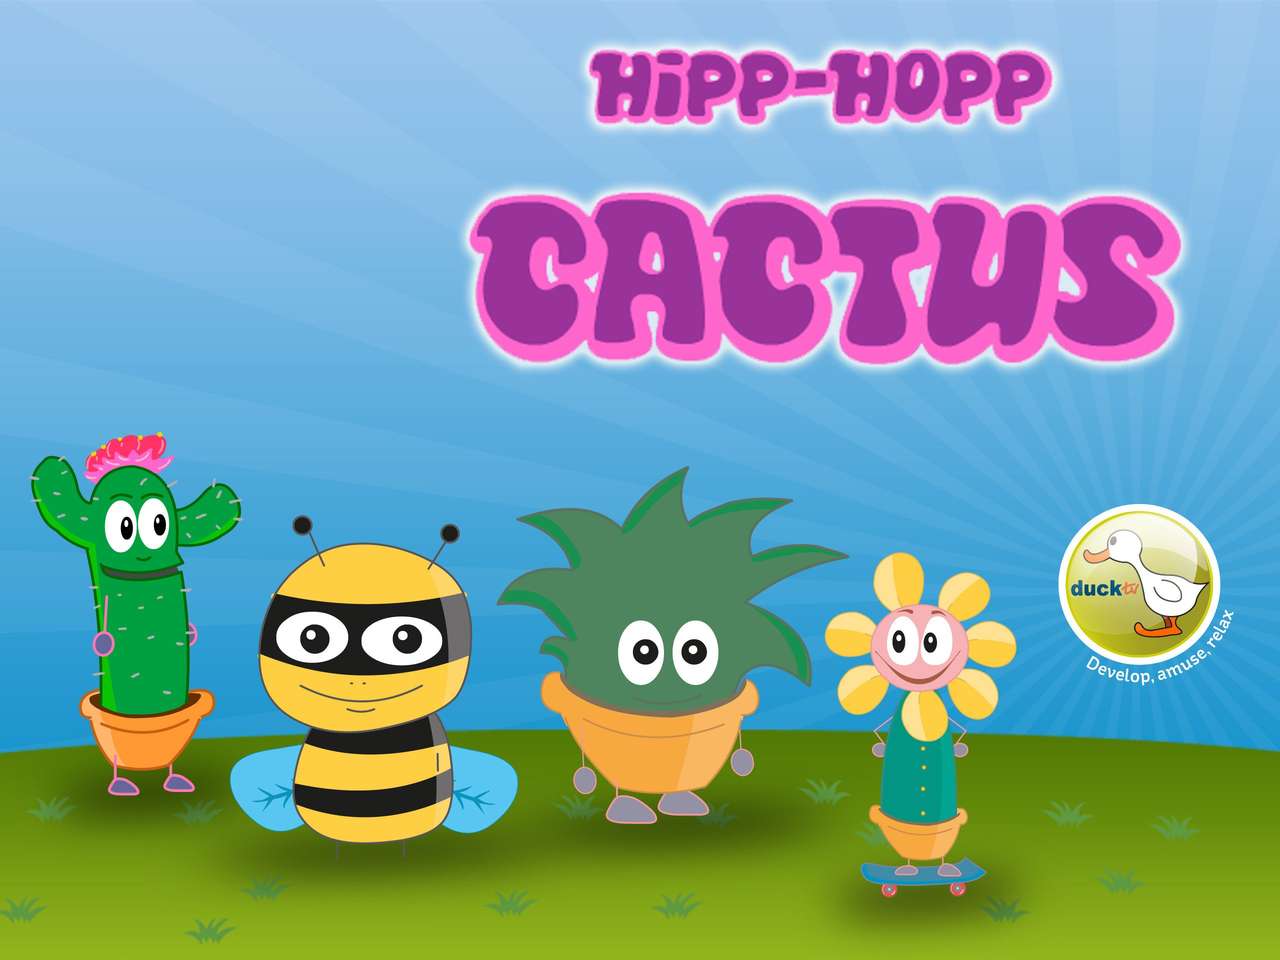 QUEBRA-CABEÇA DE TV HIPP-HOPP CACTUS DUCK quebra-cabeças online